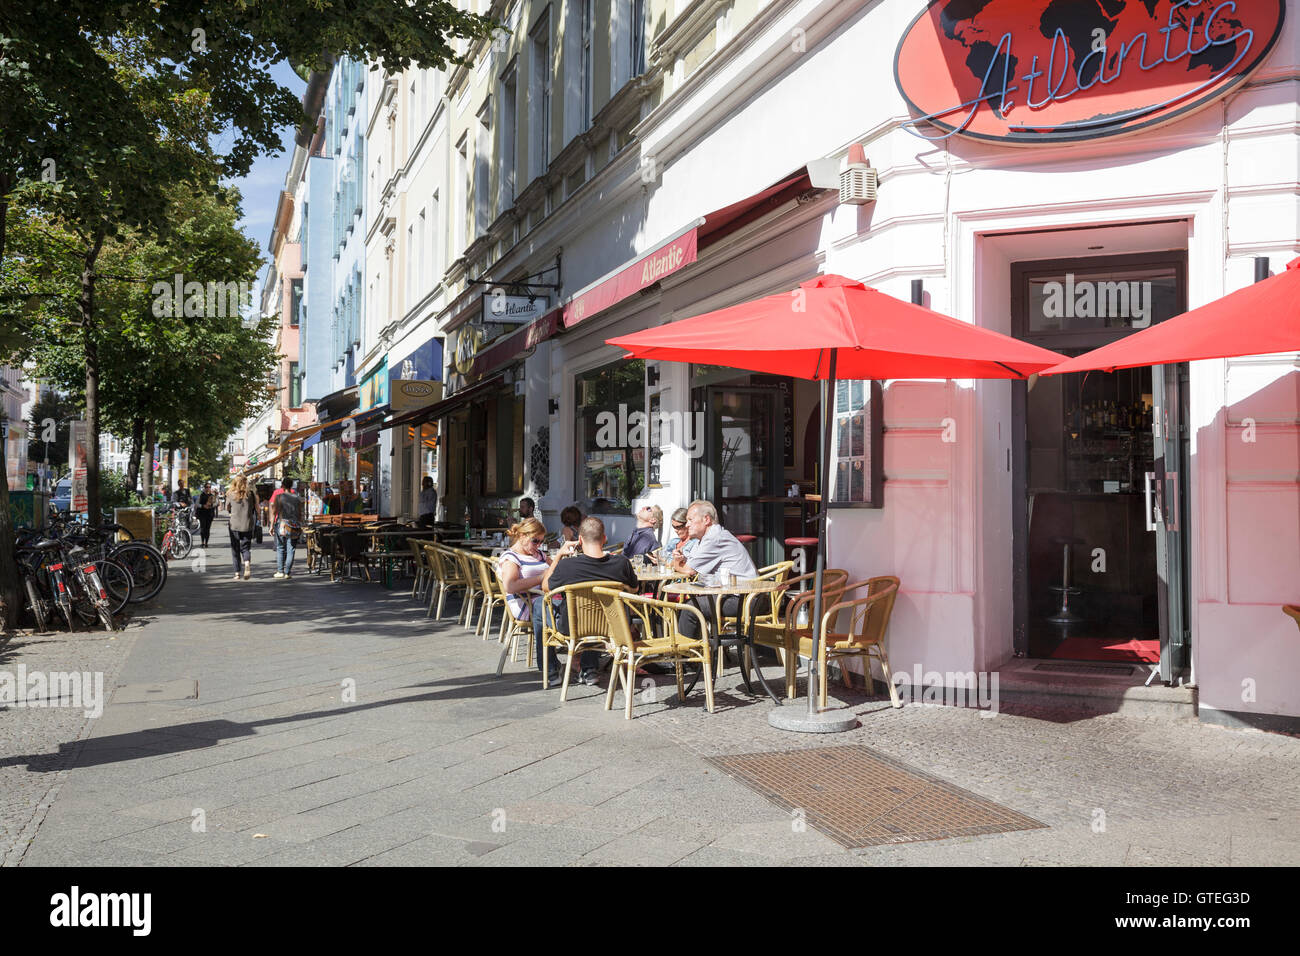 Bergmannstrasse dans Kreuzberg people sitting outside cafe Atlantis, Berlin, Allemagne Banque D'Images